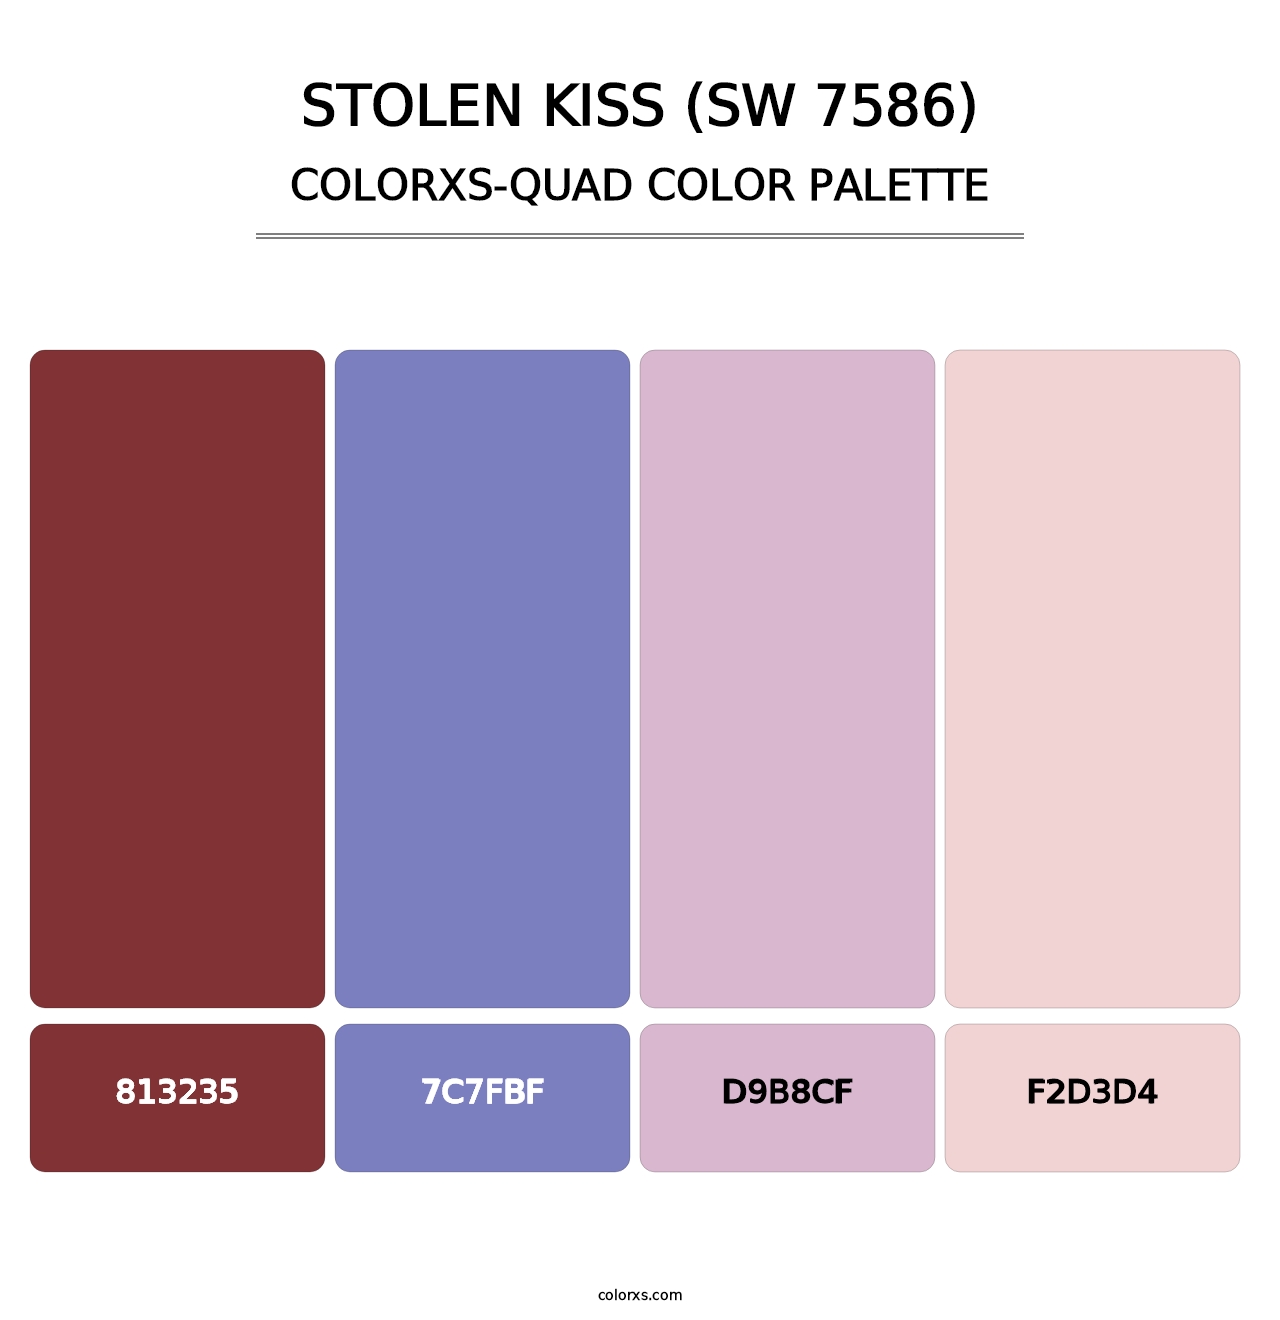 Stolen Kiss (SW 7586) - Colorxs Quad Palette